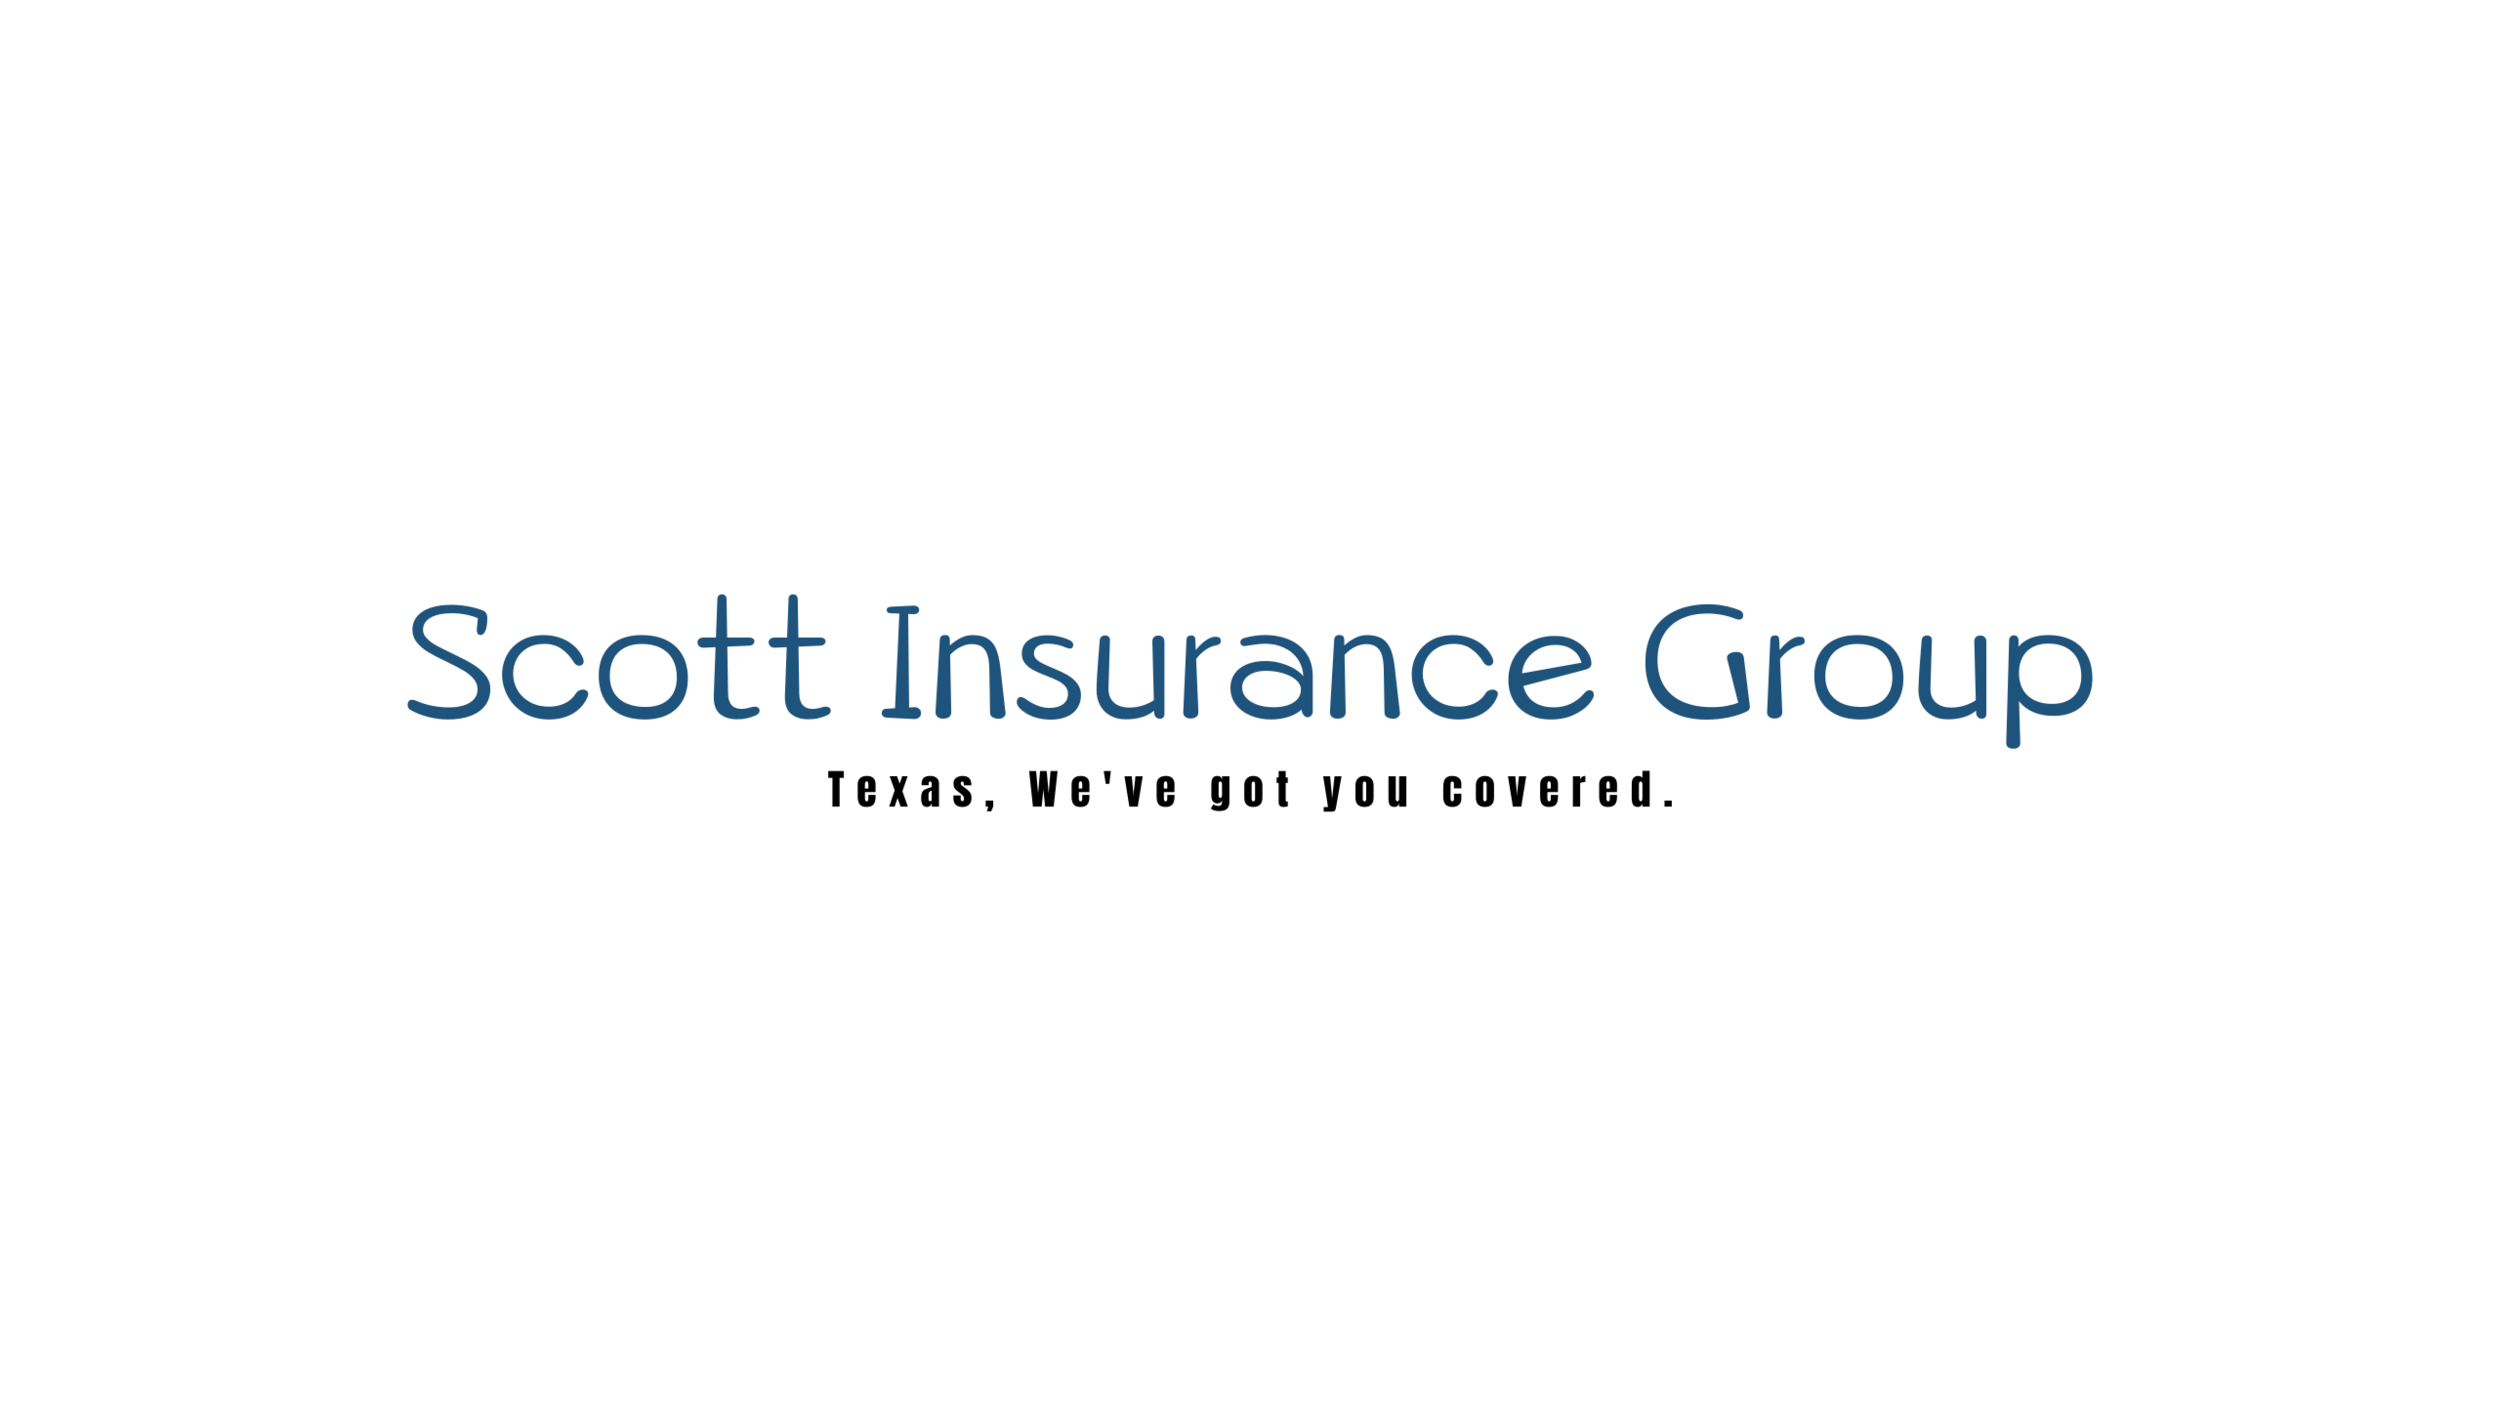 Scott Insurance Group